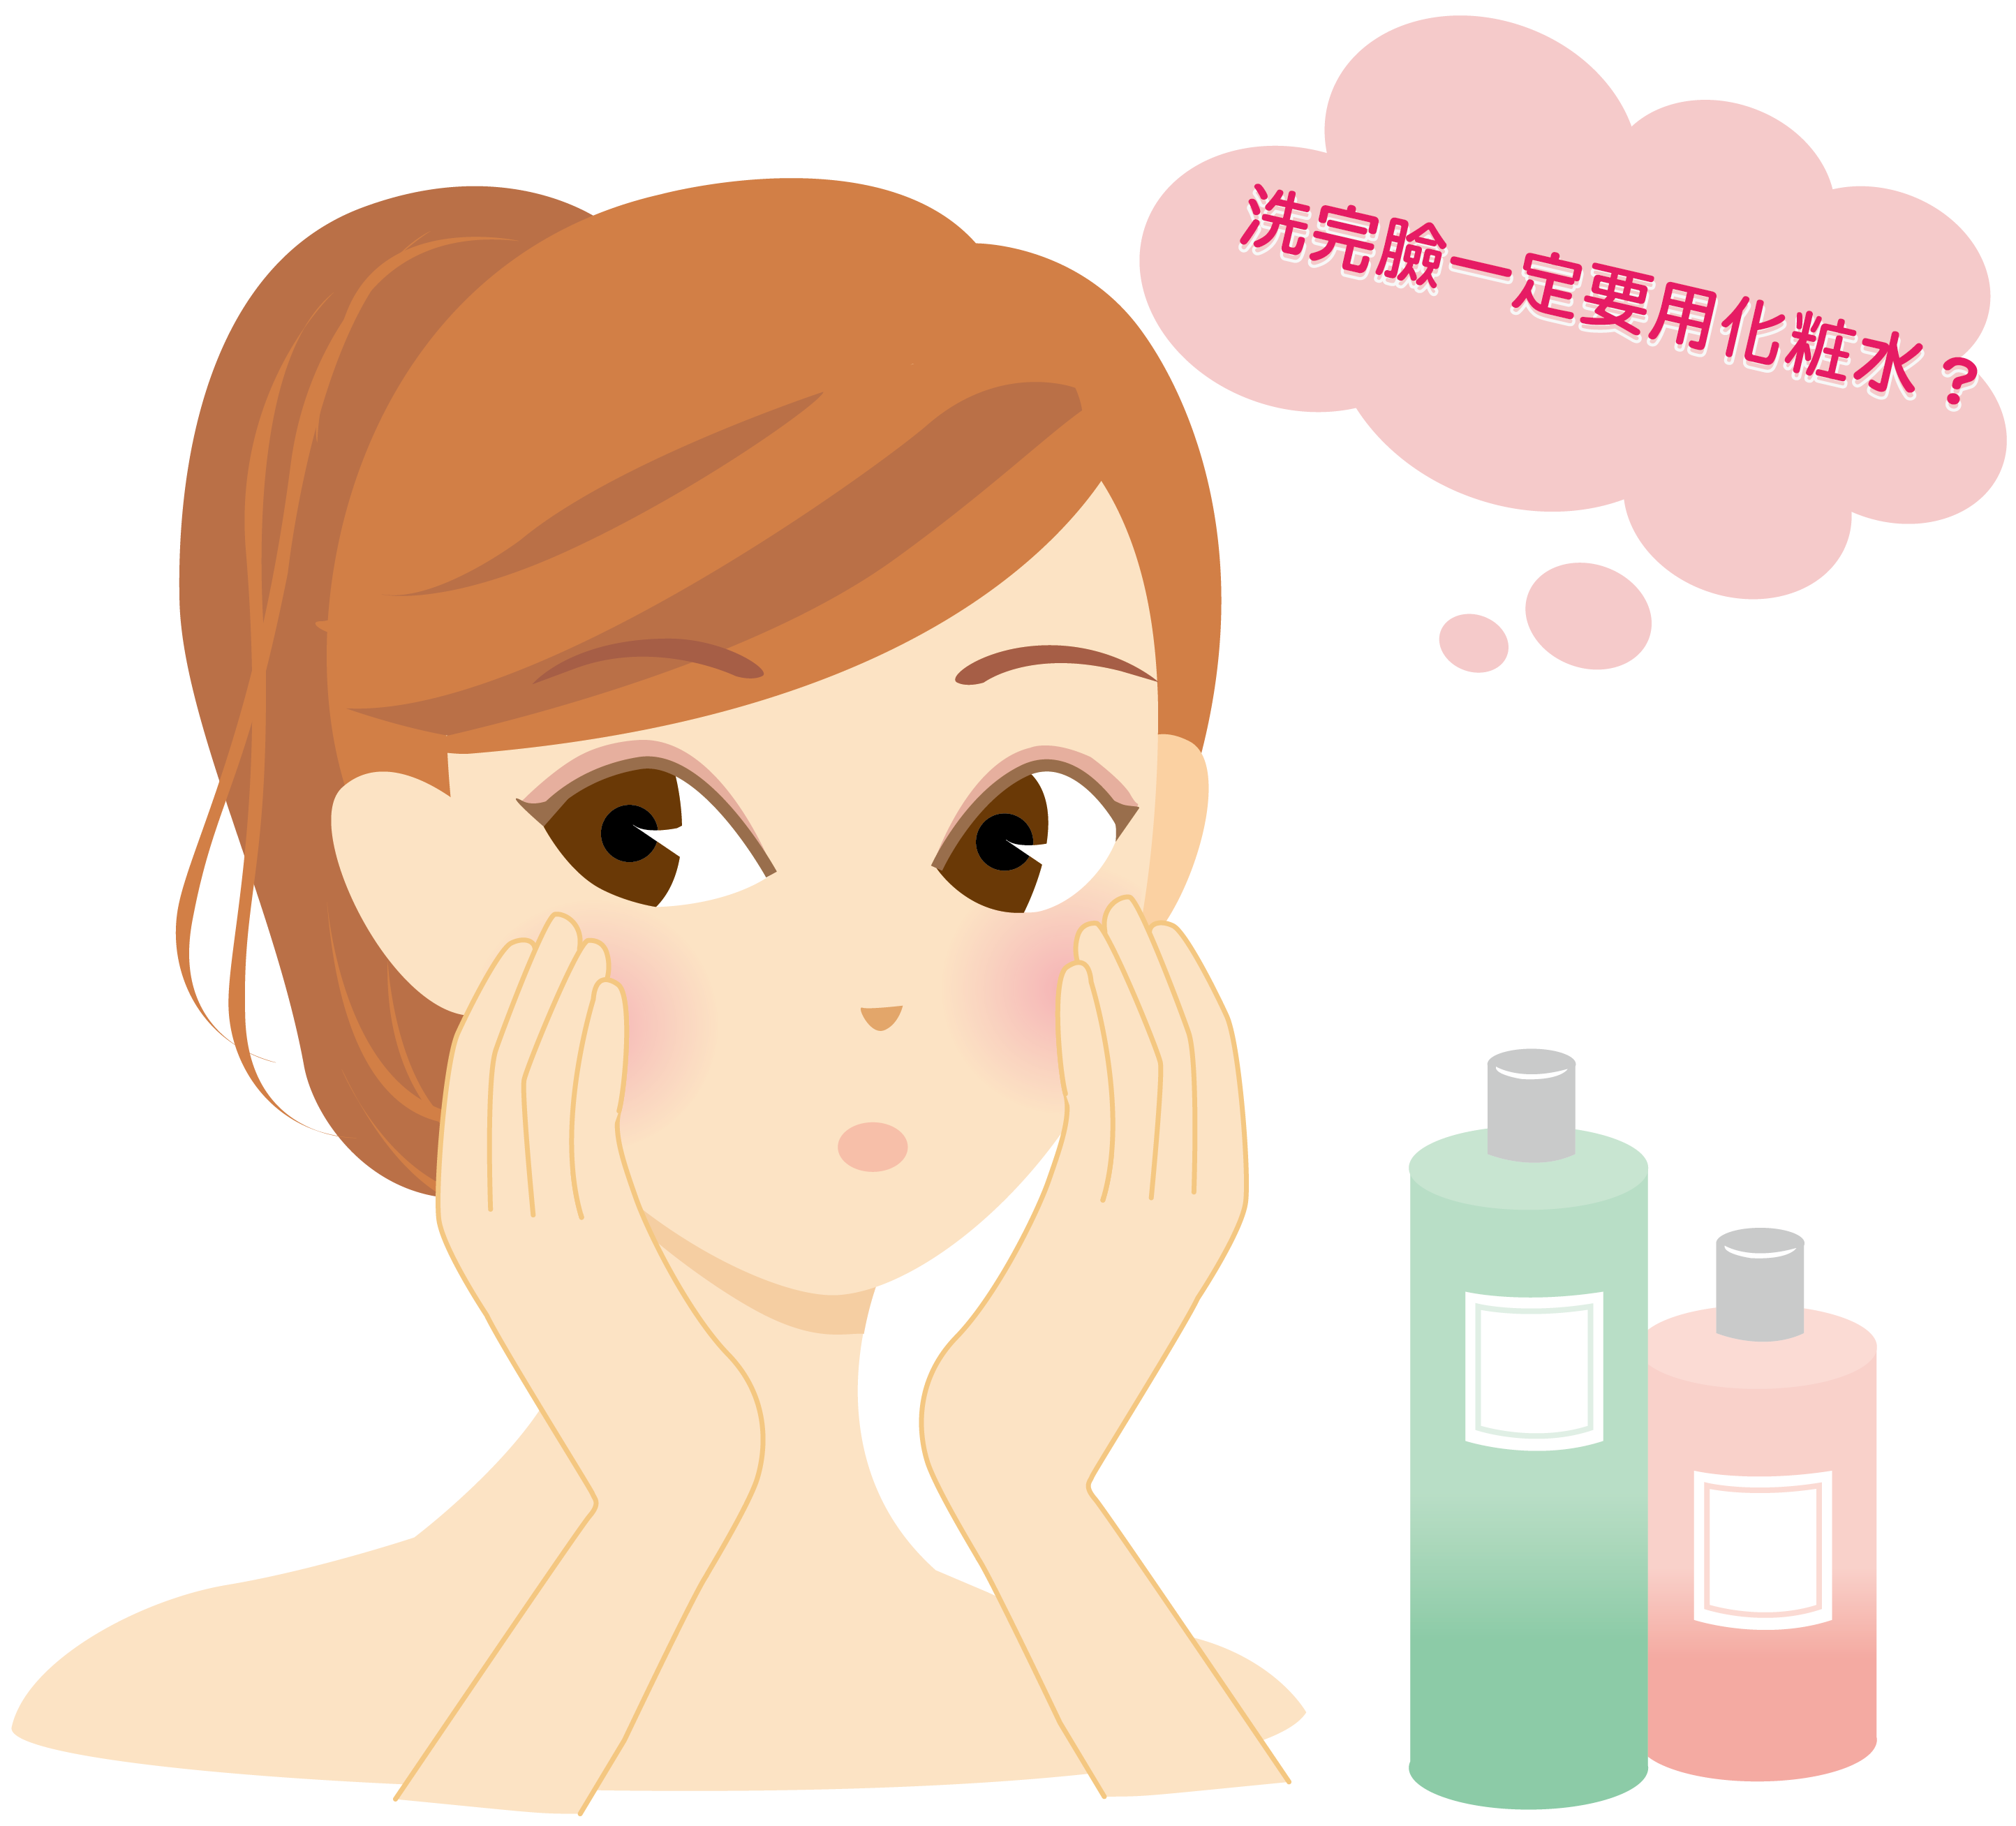 洗完臉後一定要用化粧水保養，是真的嗎?